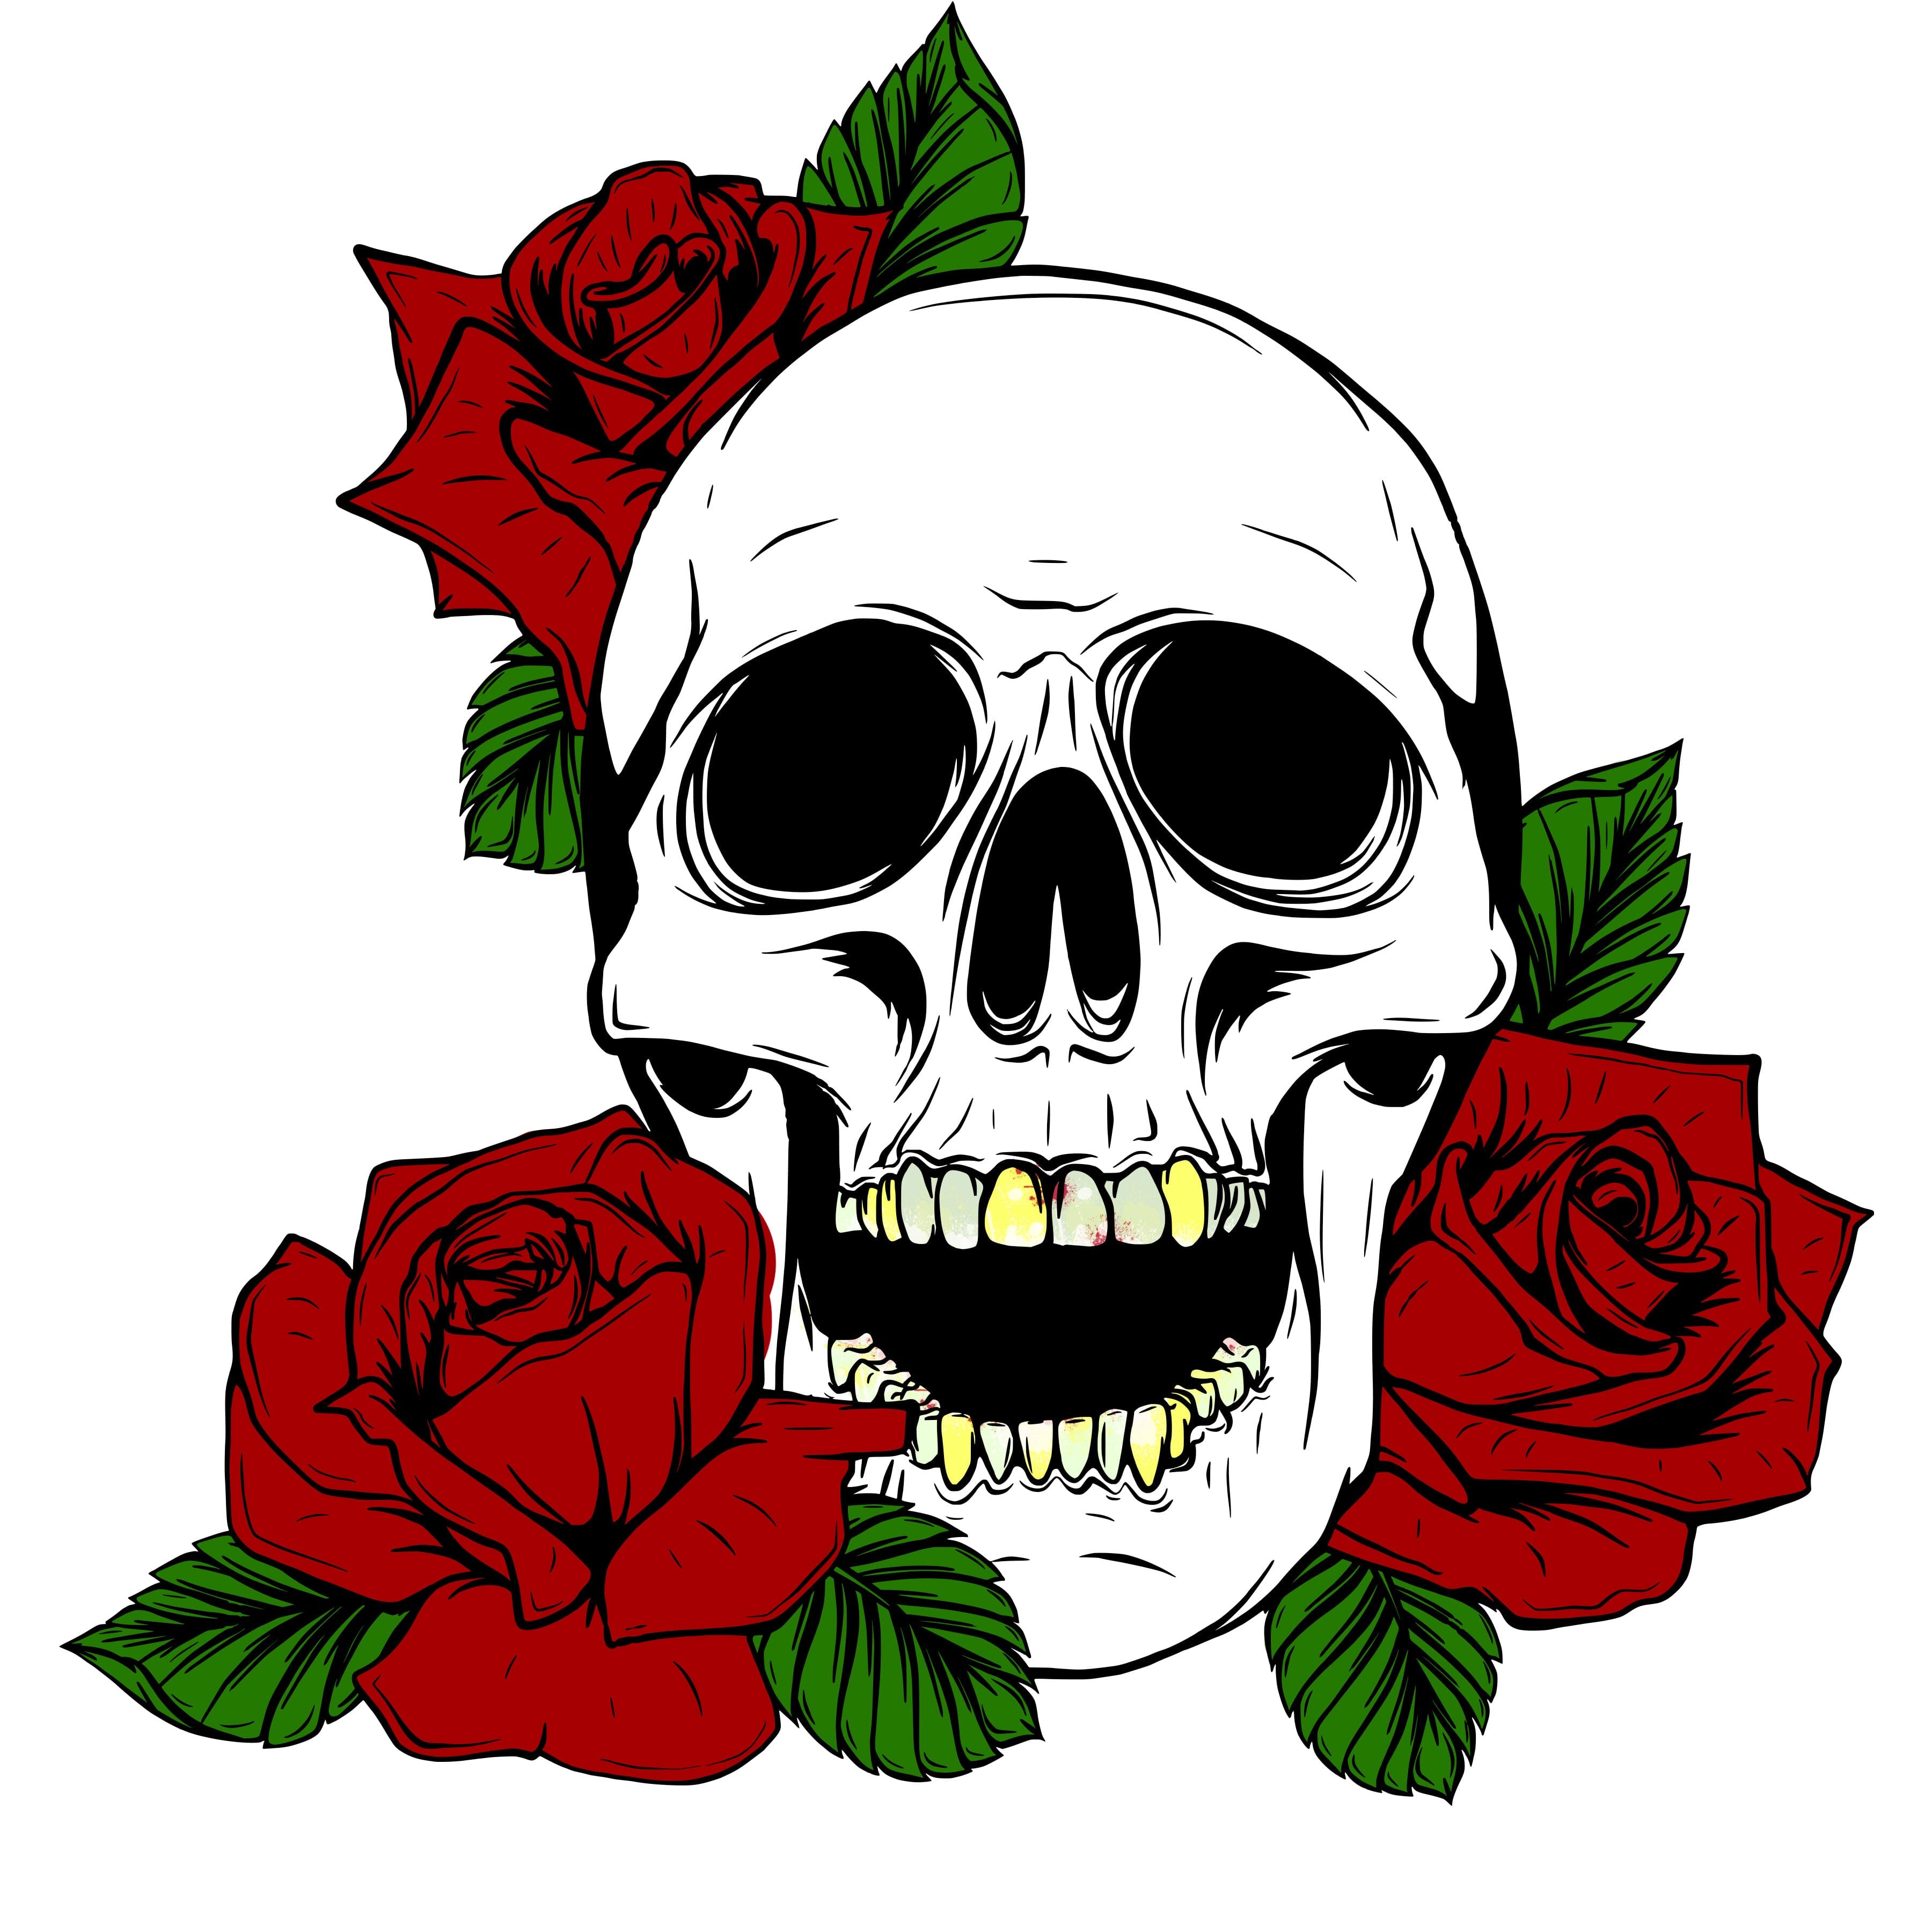 Rose - Free Rose Svg File, HD Png Download  Rose flower png, Rose  illustration, Red rose png